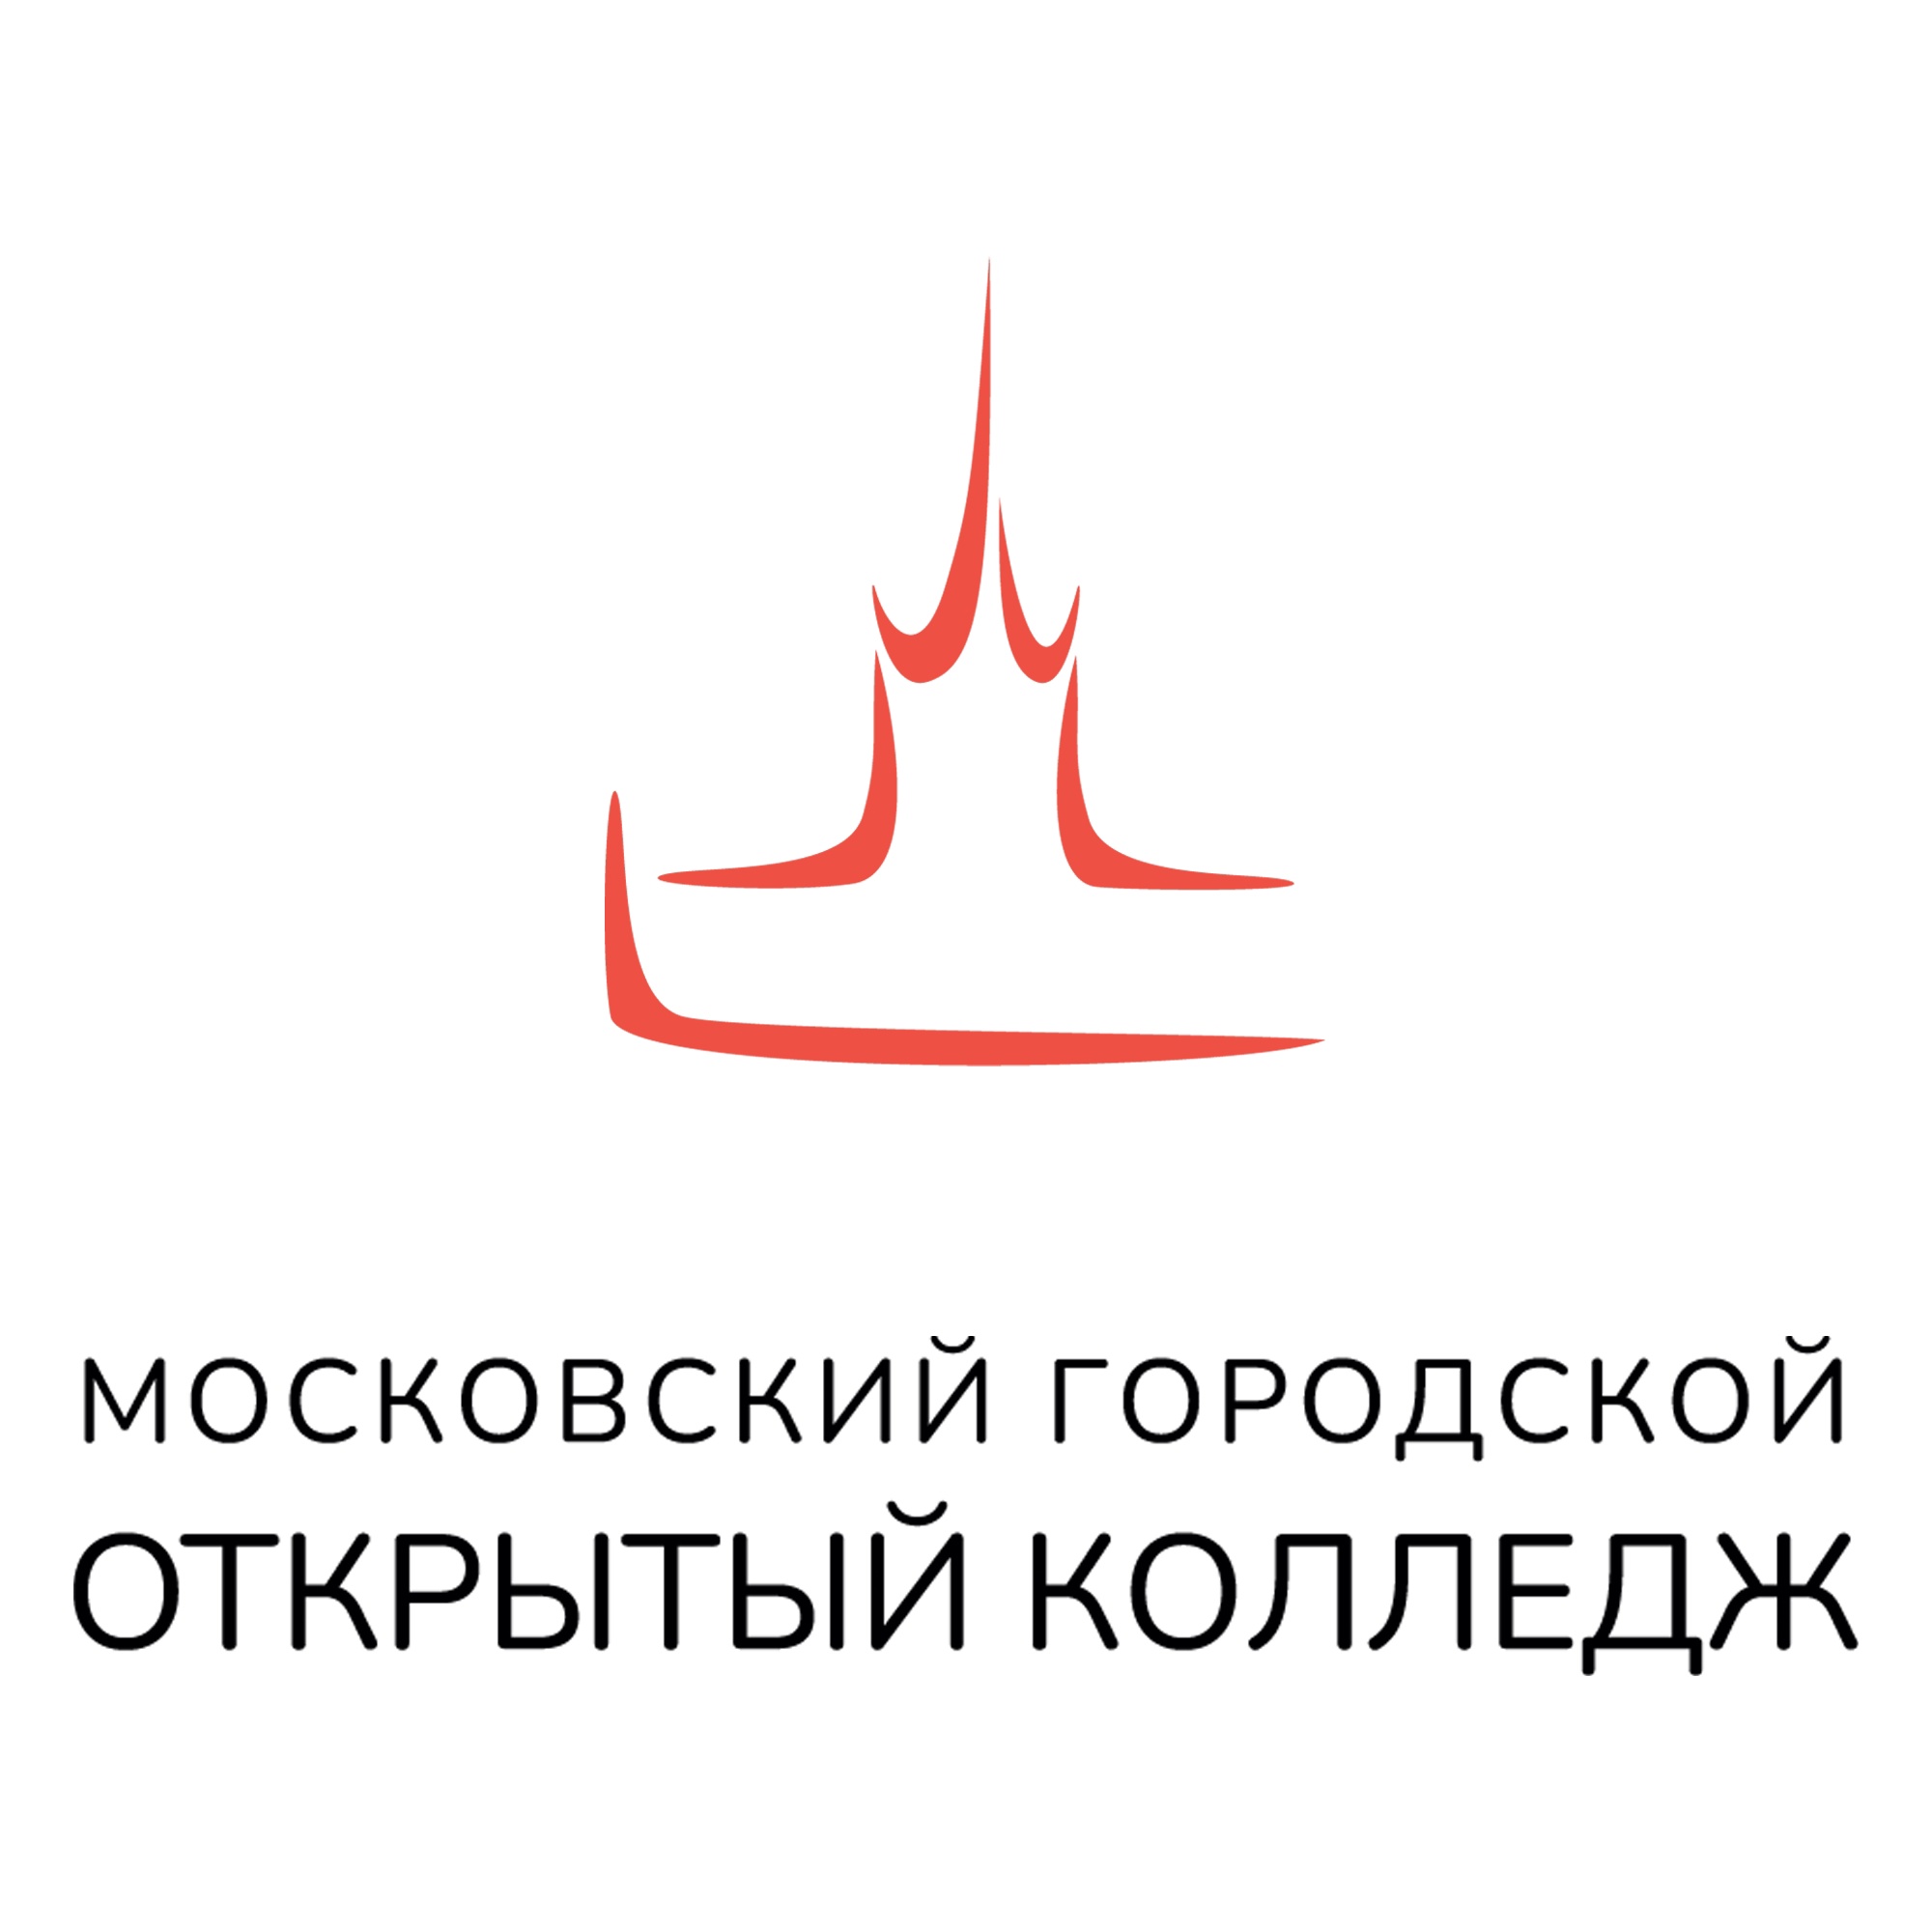 Логотип (Московский городской открытый колледж)